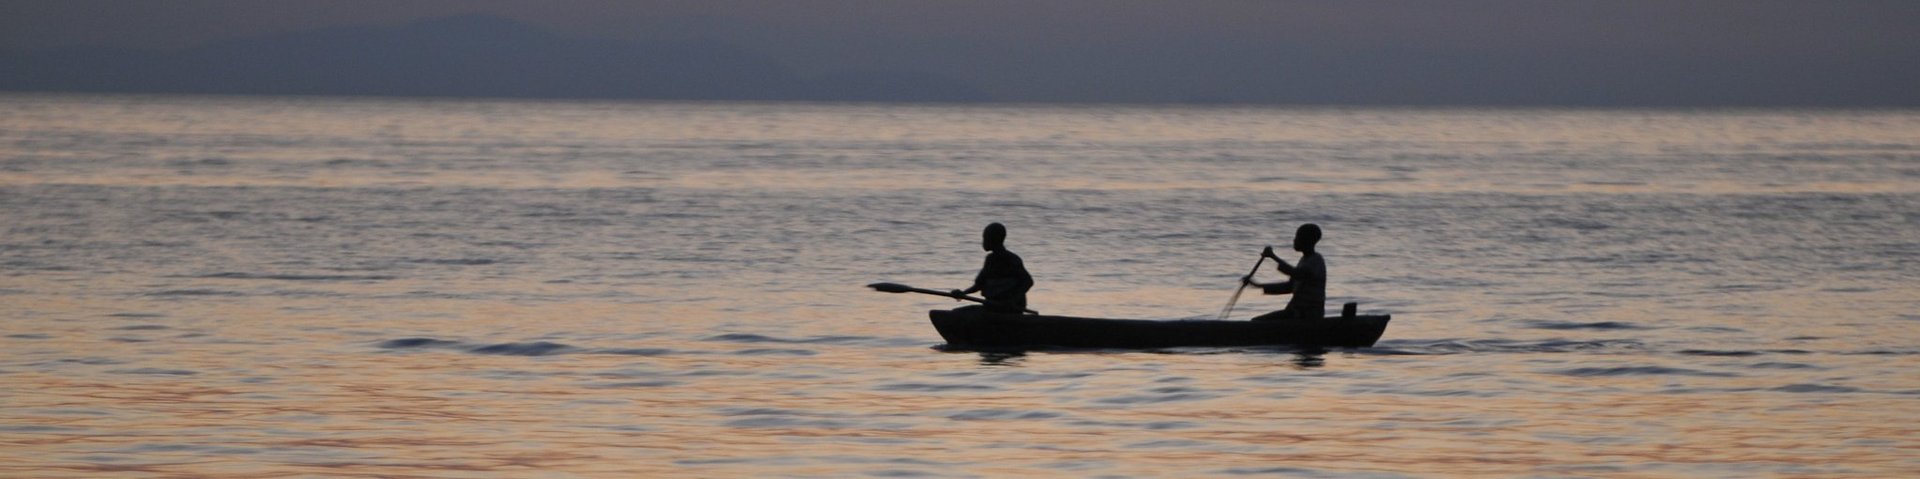 Zwei Einheimsiche rudern auf einem Boot Mitten auf dem Malawi-See